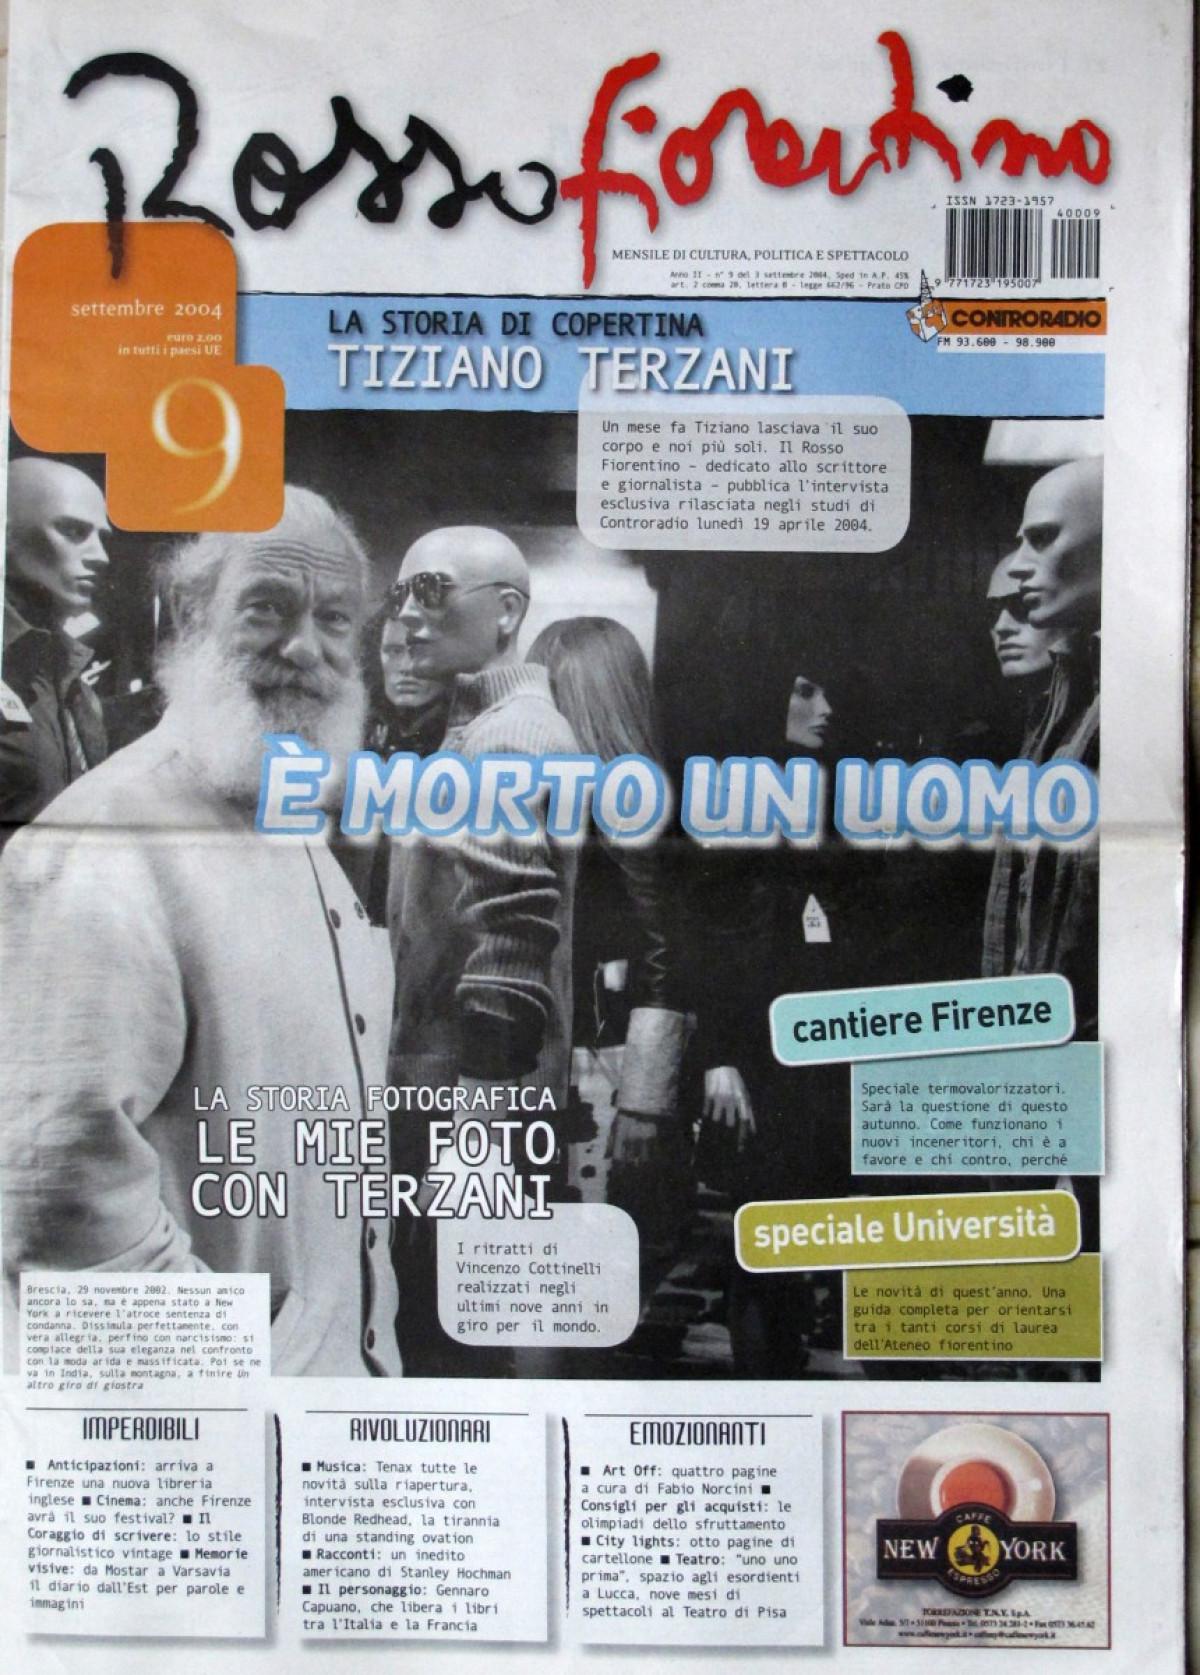 2004 - A man is dead - Rosso Fiorentino